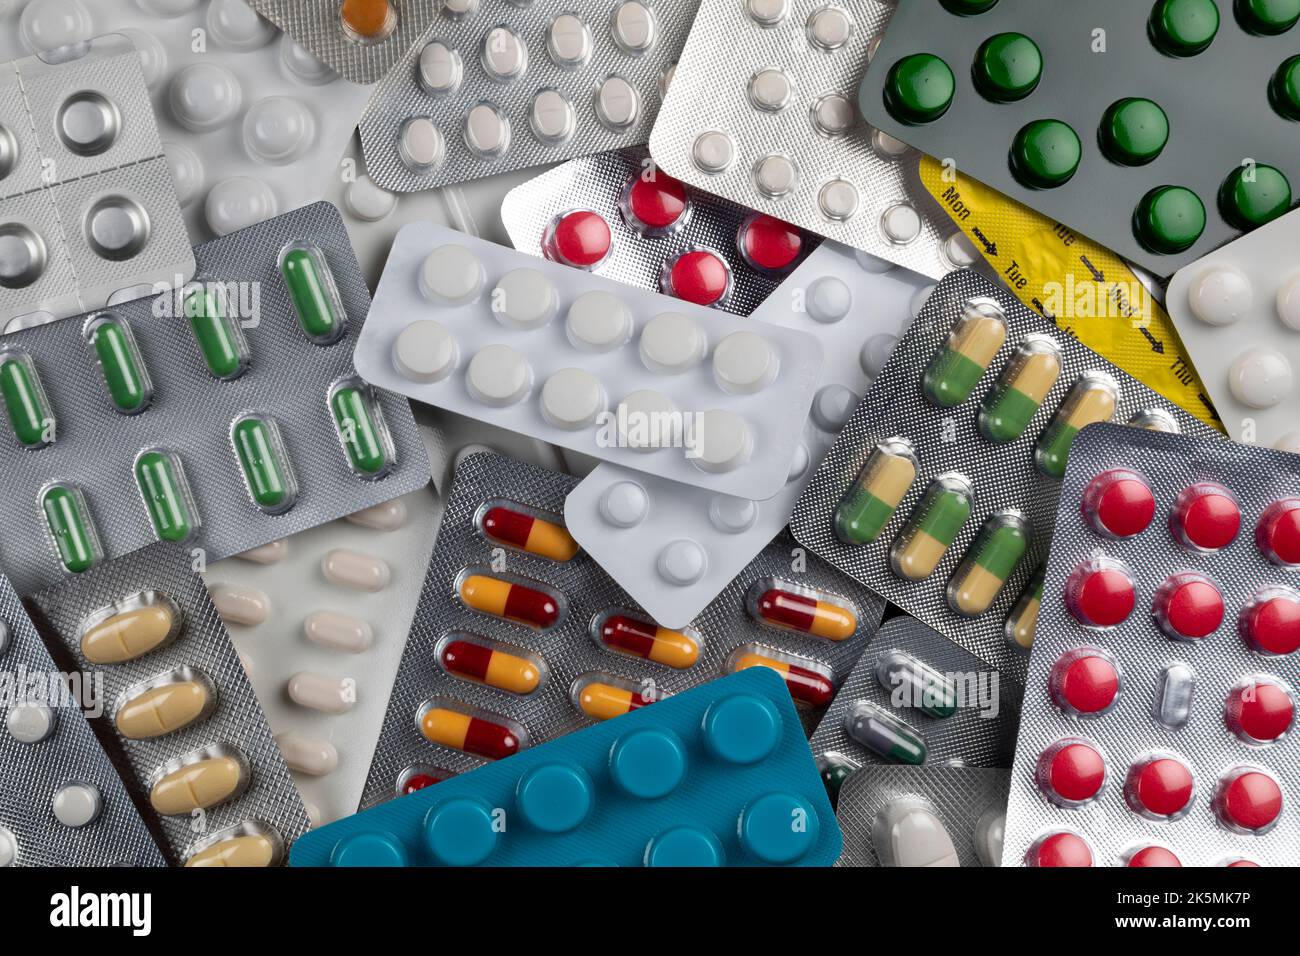 Prescription drugs in blister packs. Stock Photo